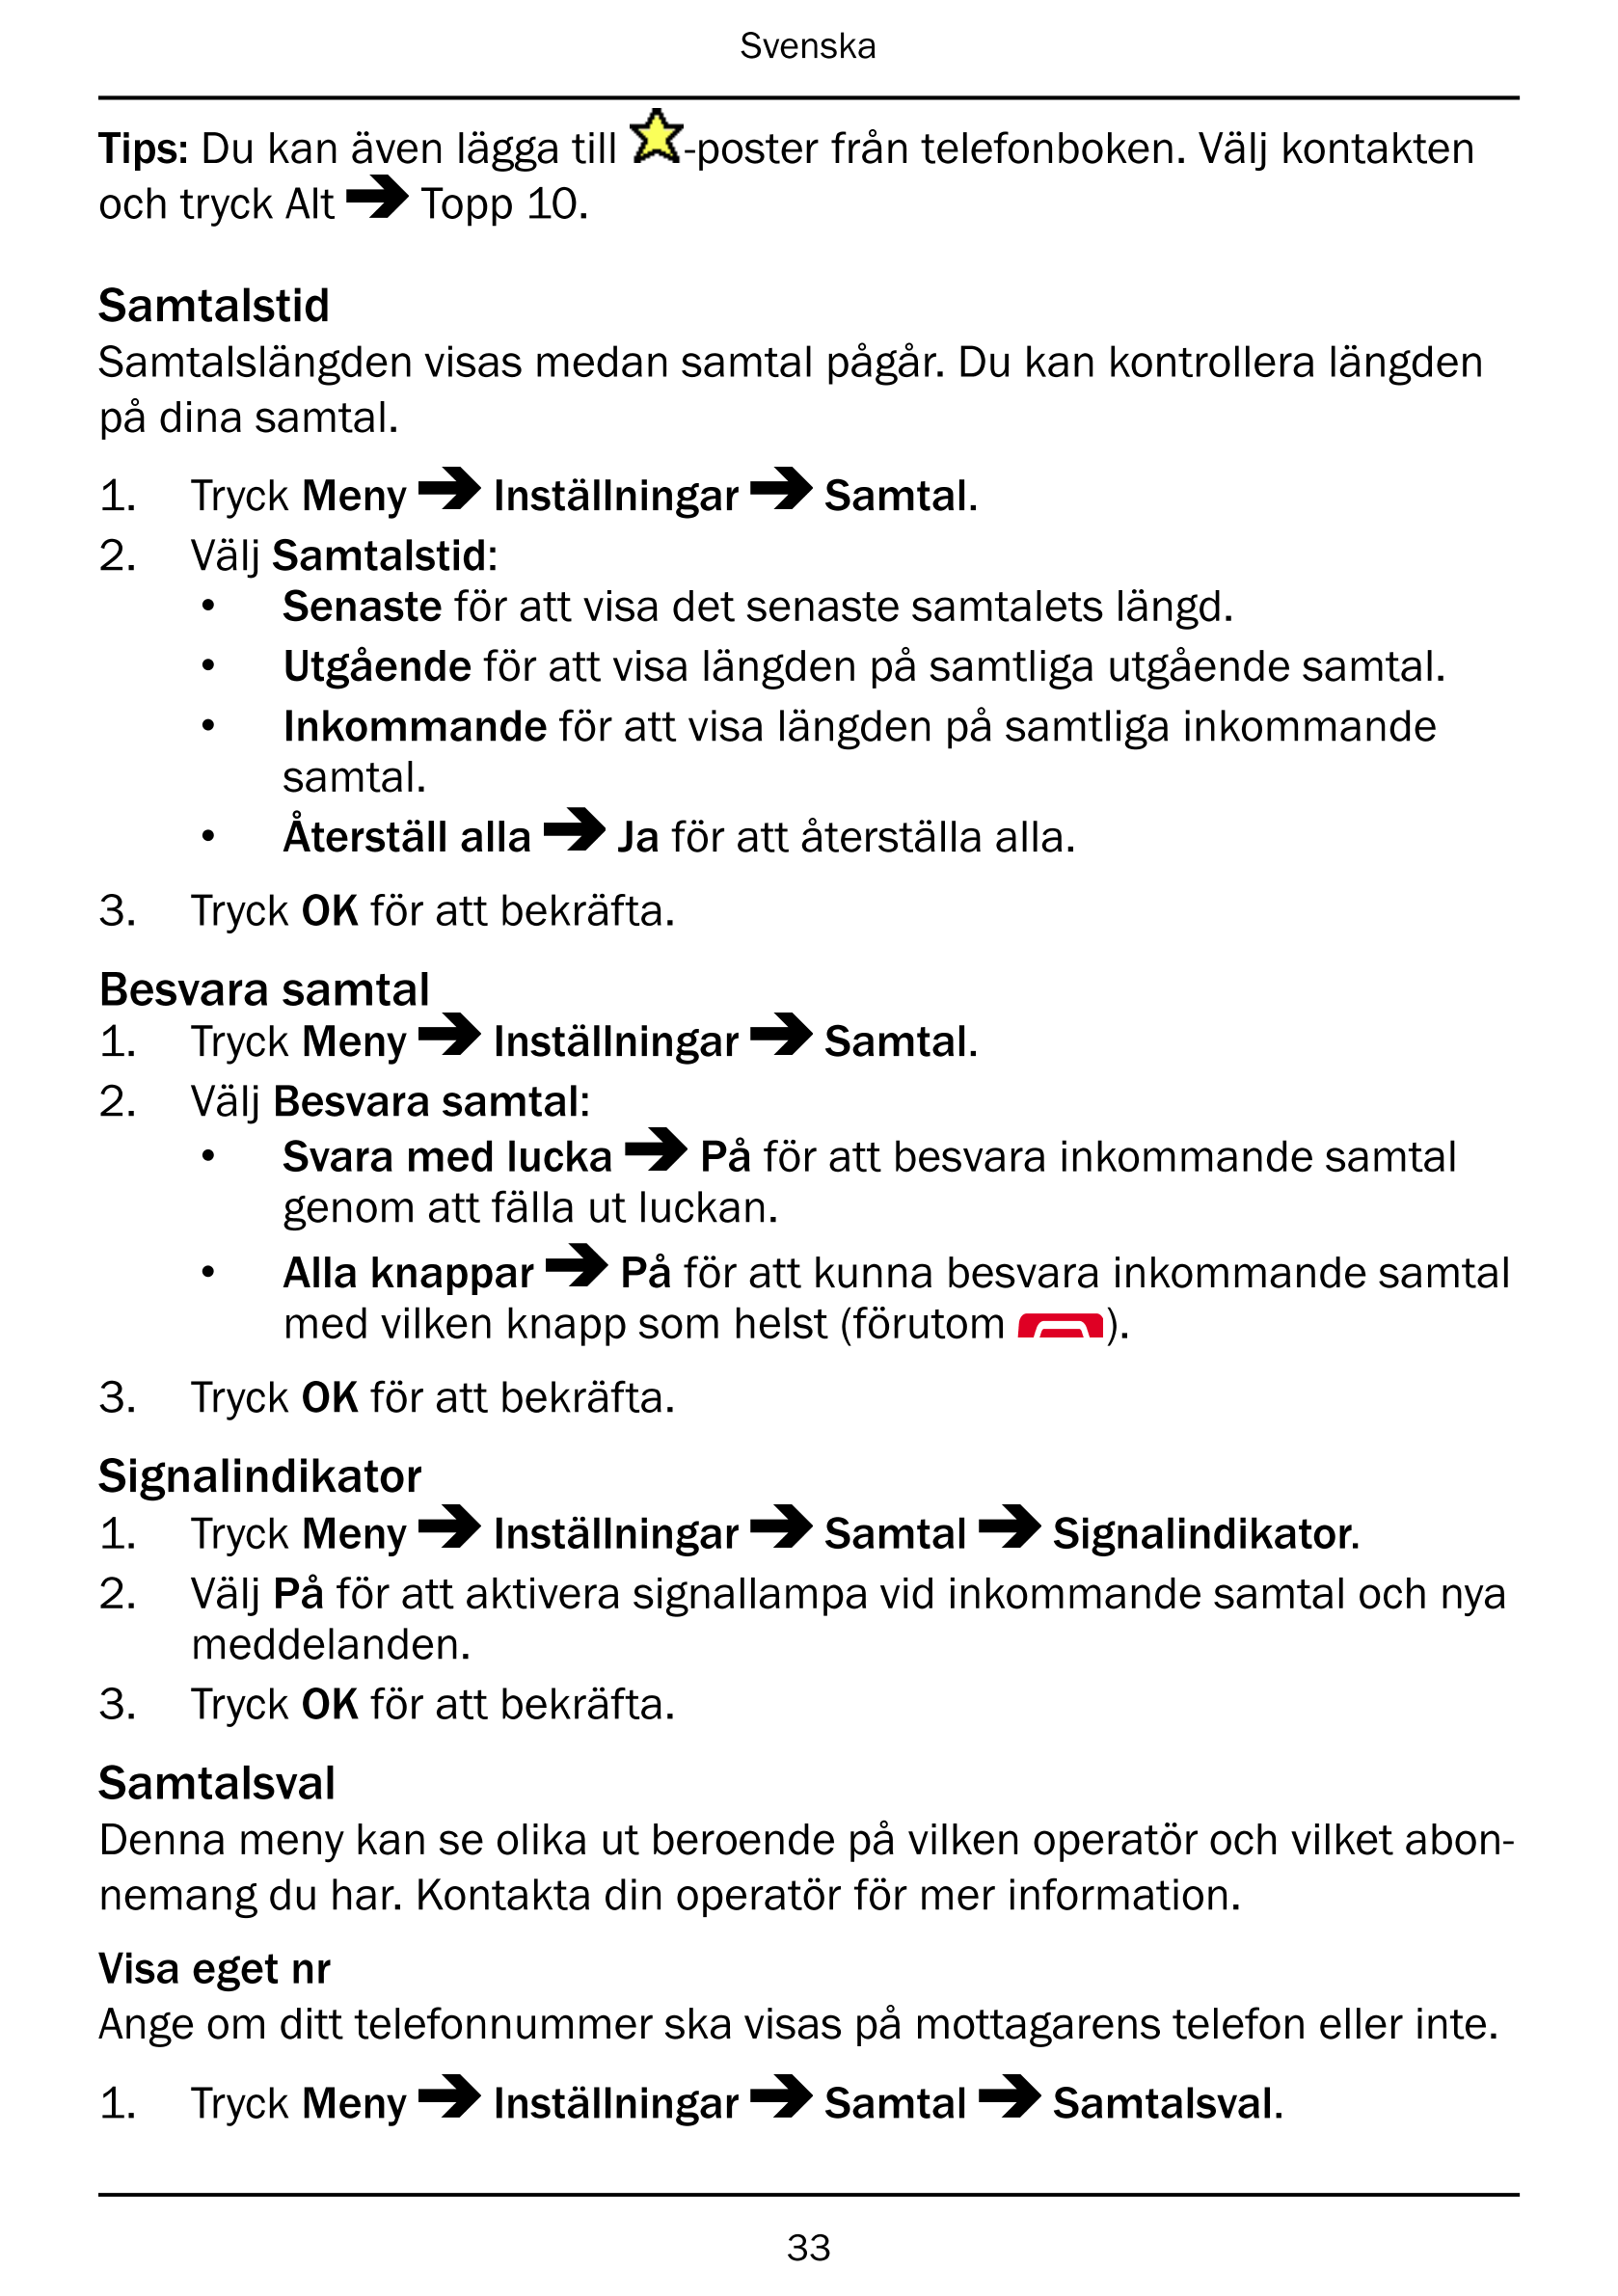 Svenska
Tips: Du kan även lägga till -poster från telefonboken. Välj kontakten
och tryck Alt Topp 10.
Samtalstid
Samtalslängden 